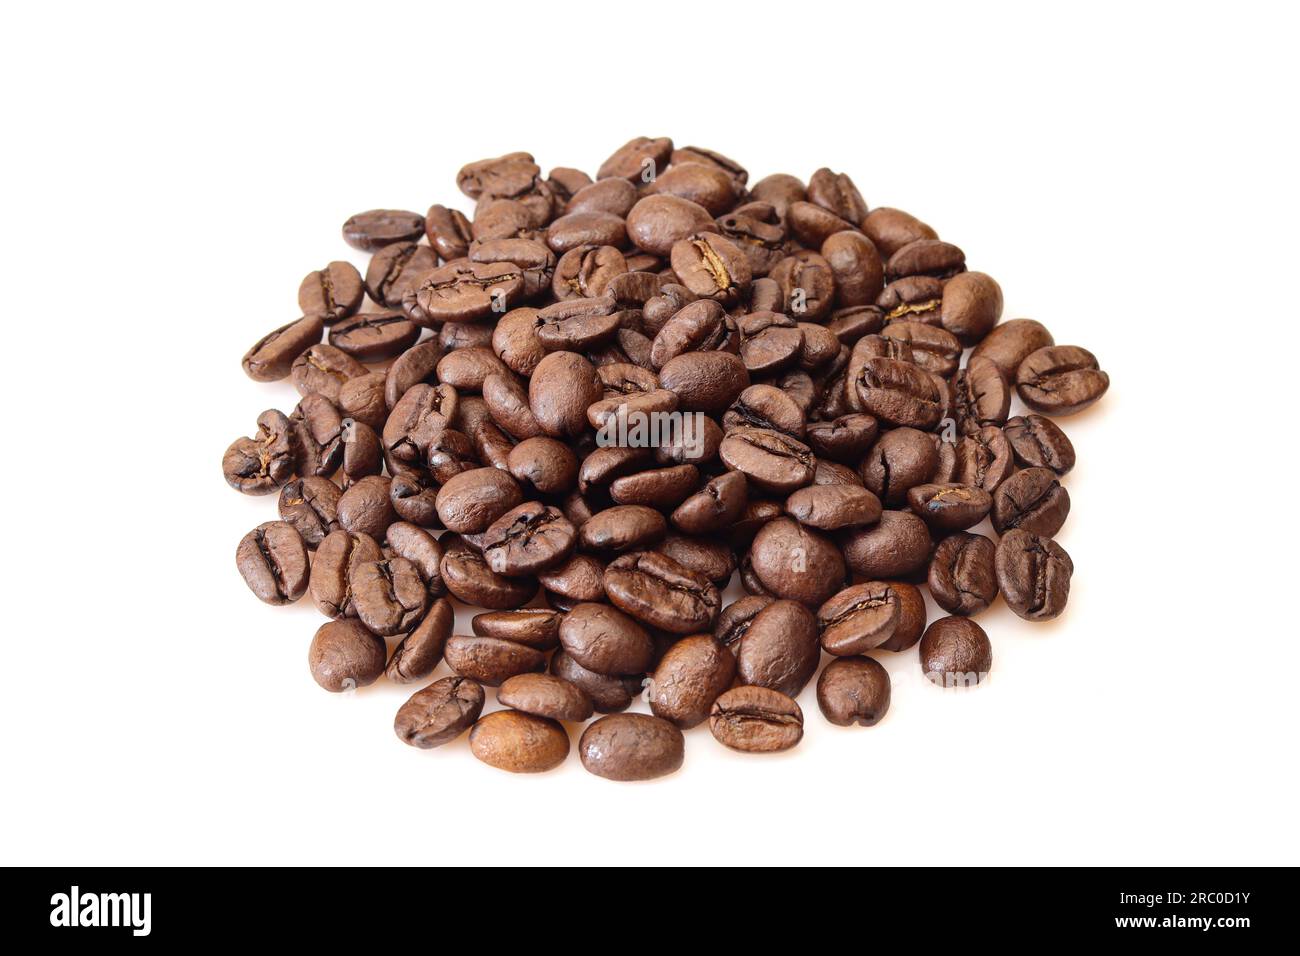 Ein Haufen gerösteter arabica-Kaffeebohnen, isoliert auf weißem Hintergrund Stockfoto